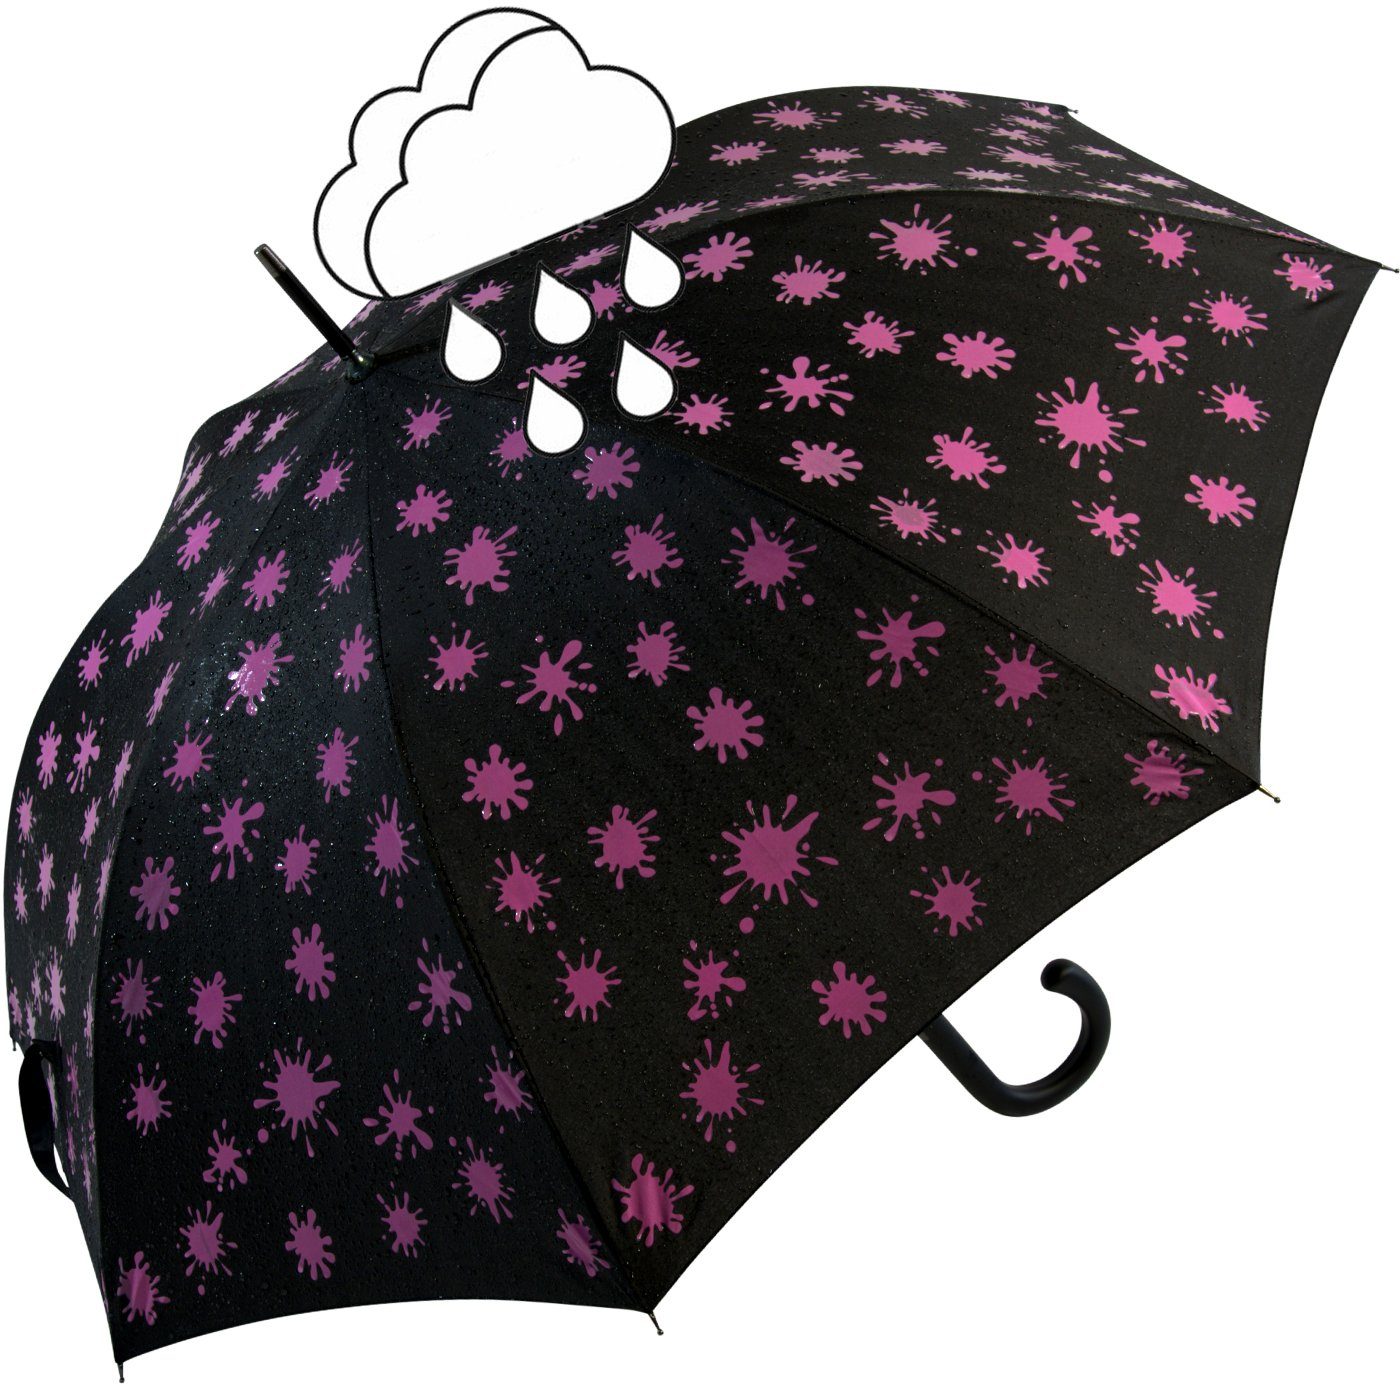 mit iX-brella und neon-pink Print, schwarz-weiß-neonpink Nässe bei - Wet Automatik Langregenschirm Farbkleckse Damenschirm iX-brella Farbänderung